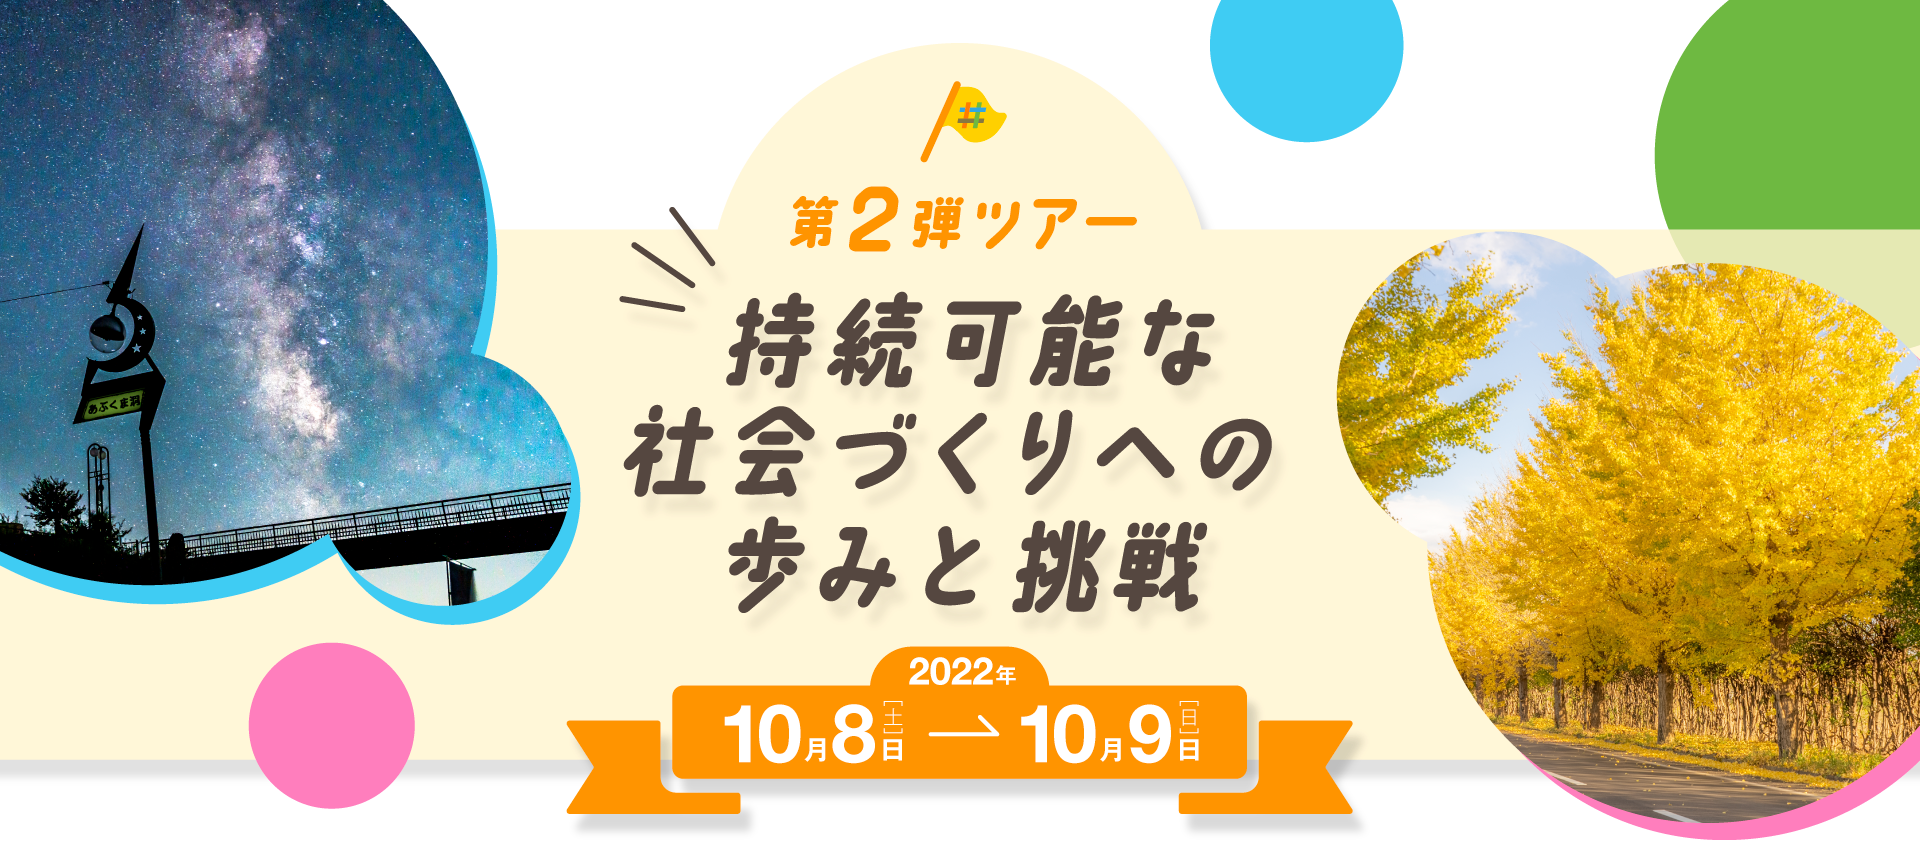 福島移住体験ツアー第1弾 誇り再生への歩みと挑戦